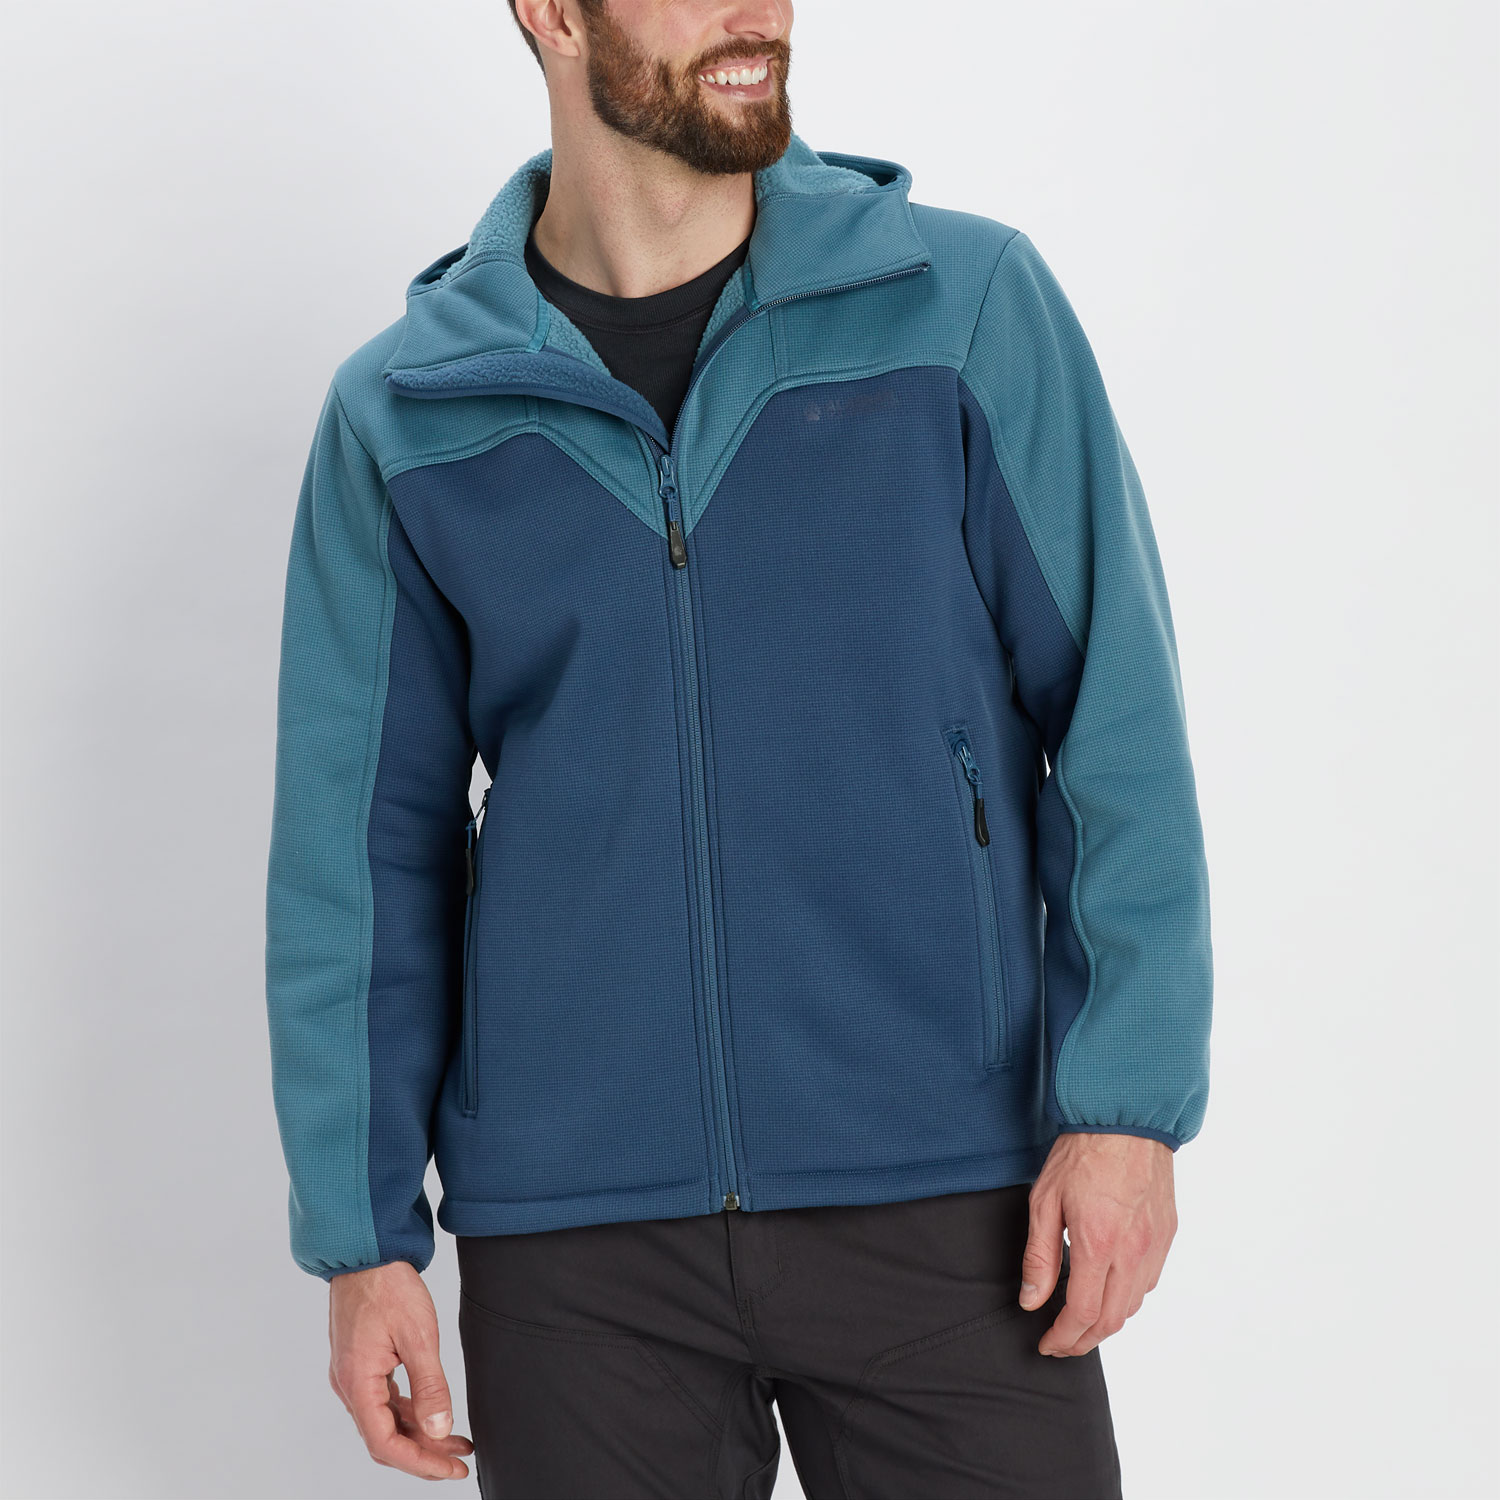 Men's Alaskan Hardgear Polartec Hardface Fleece Jacket